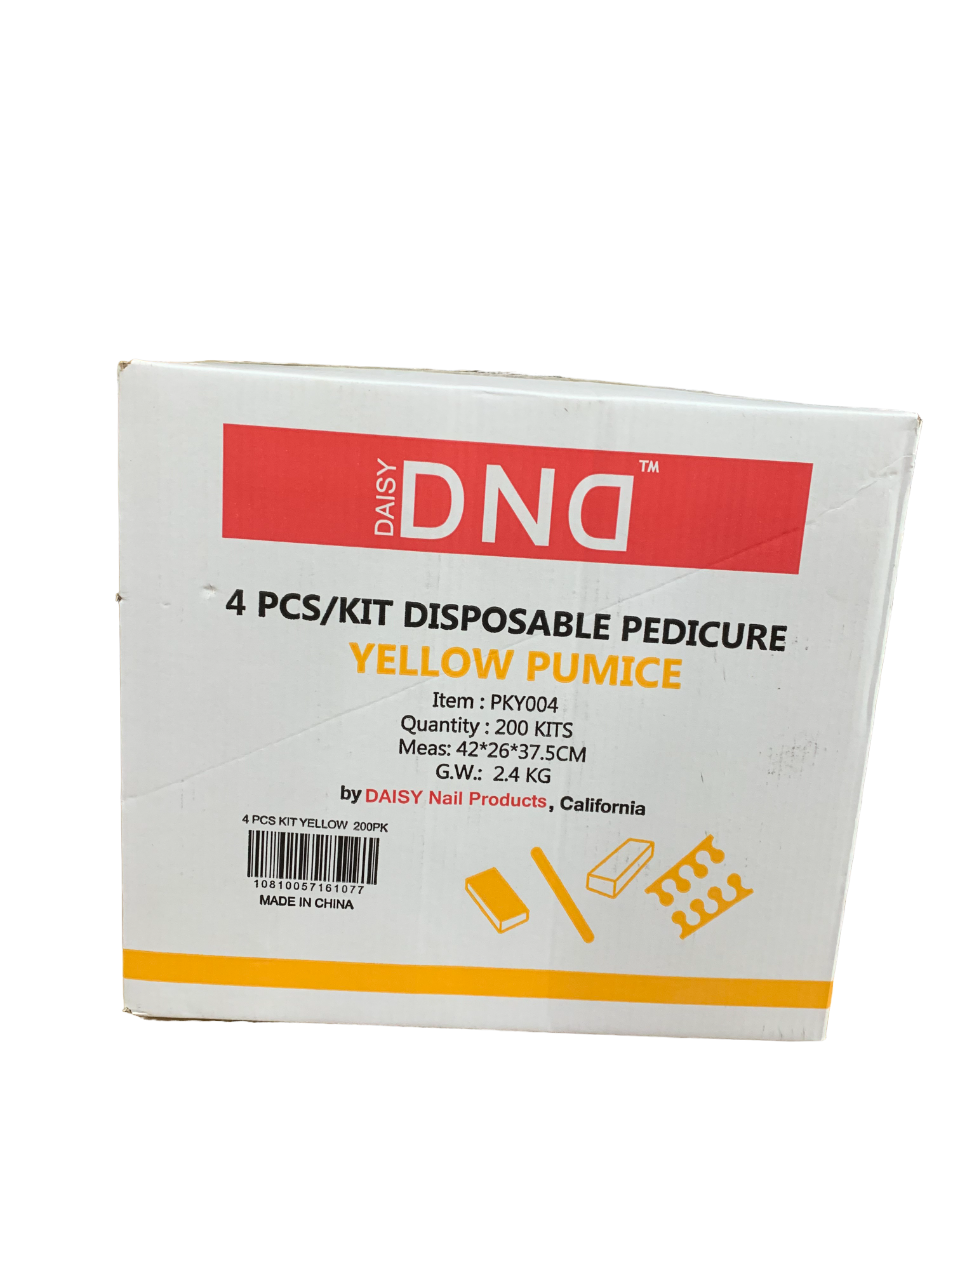 DND Disposable Pedicure Kit Case